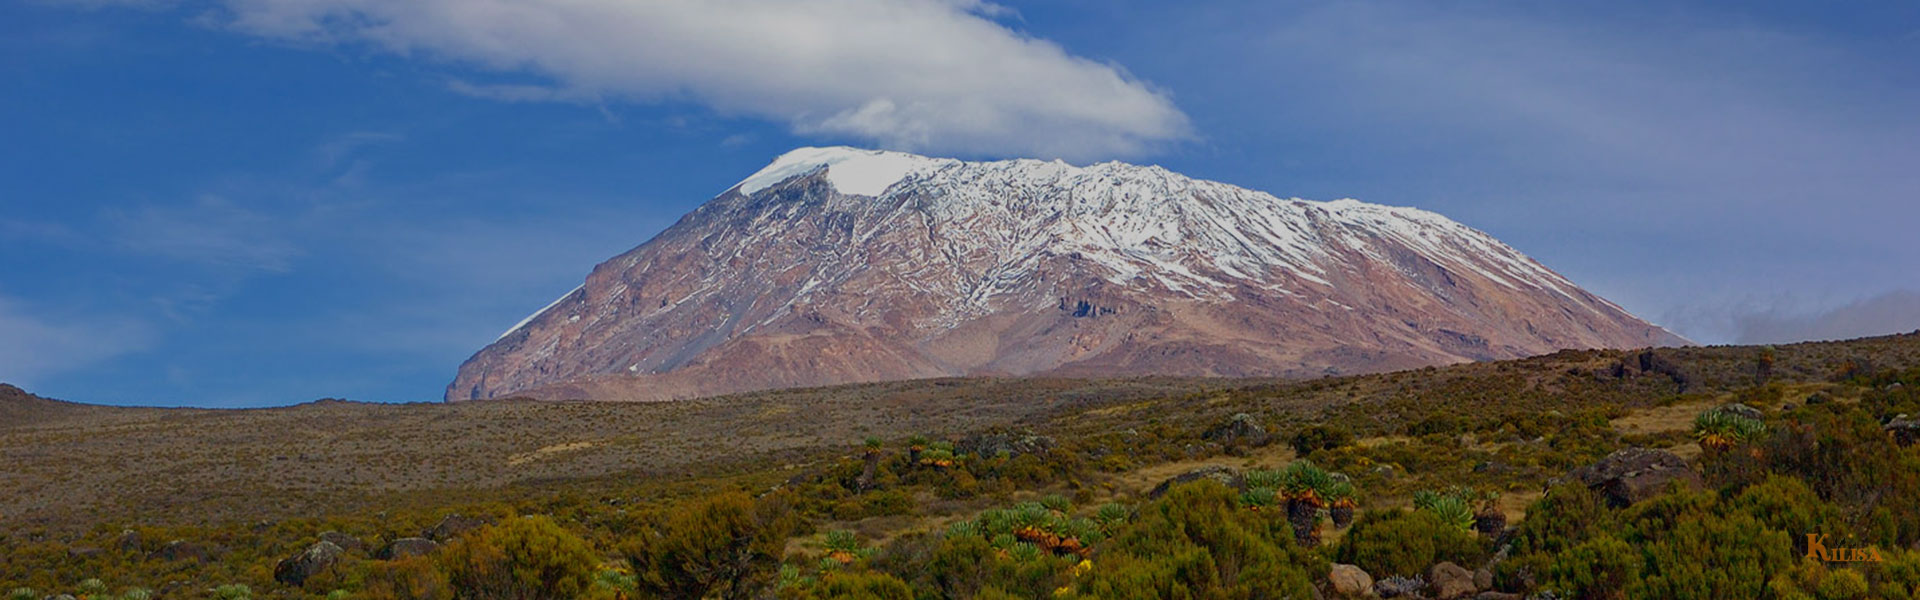 Mountain Kilimanjaro National Park